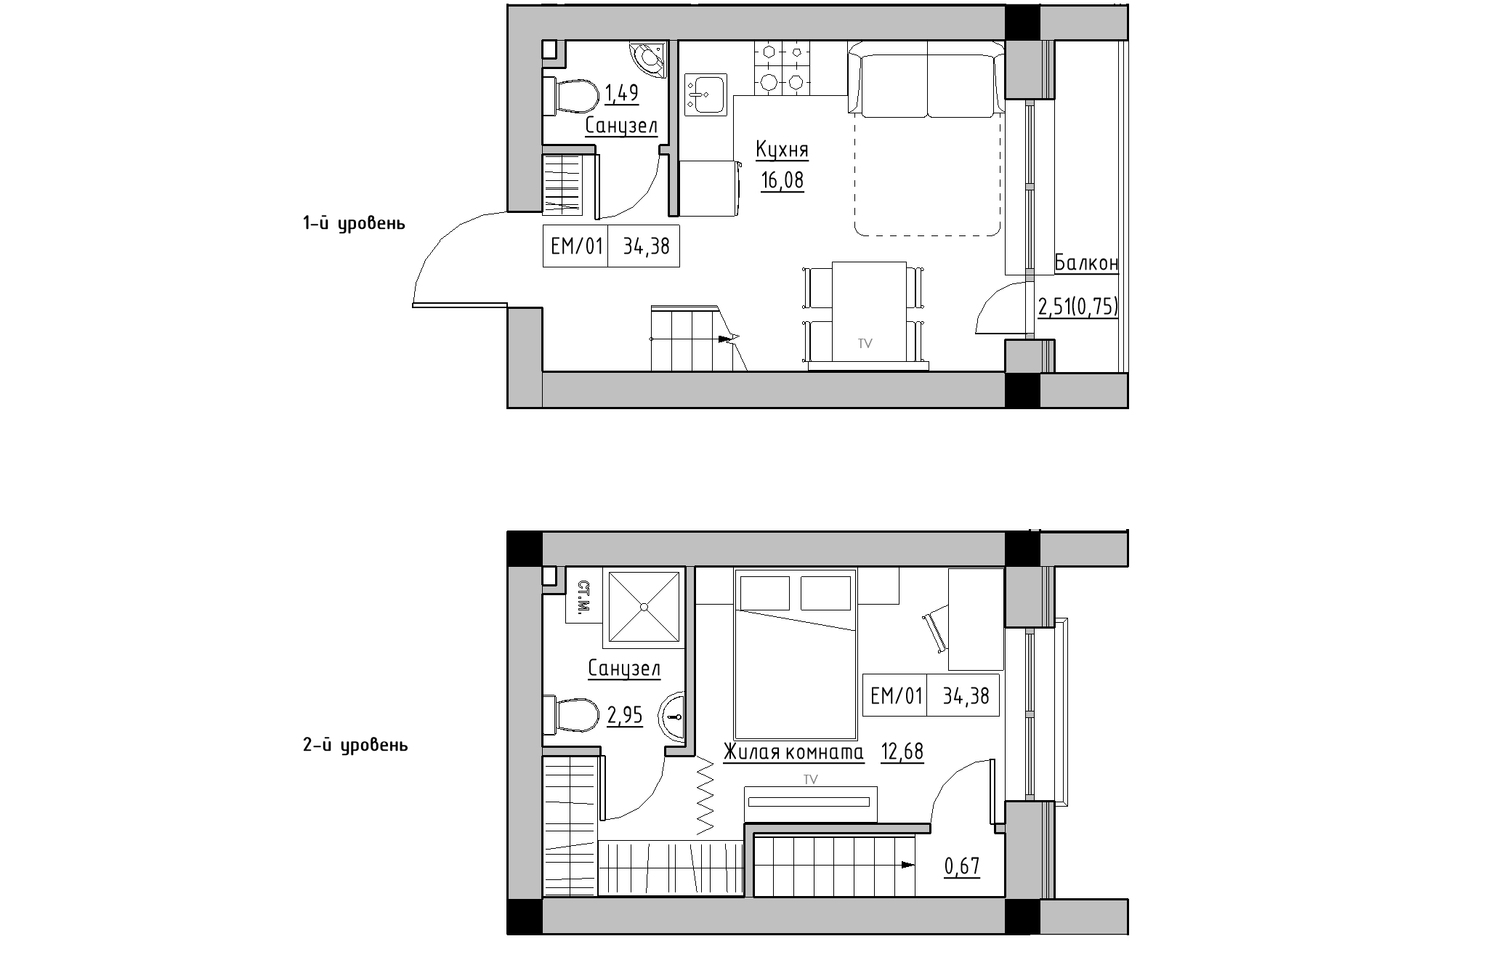 Planning 2-lvl flats area 34.38m2, KS-010-05/0012.